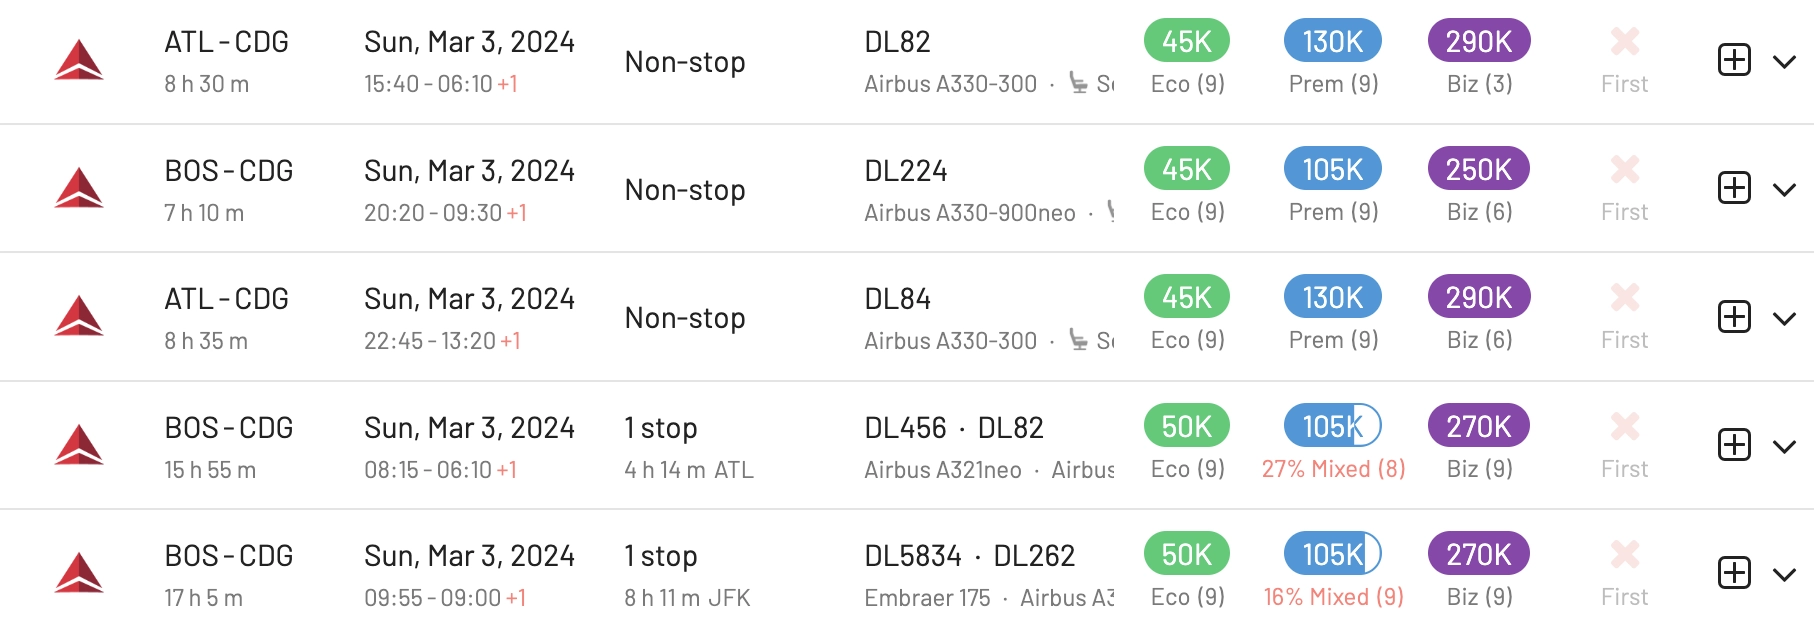 Atlanta or Boston to Paris for 90k SkyMiles round trip.